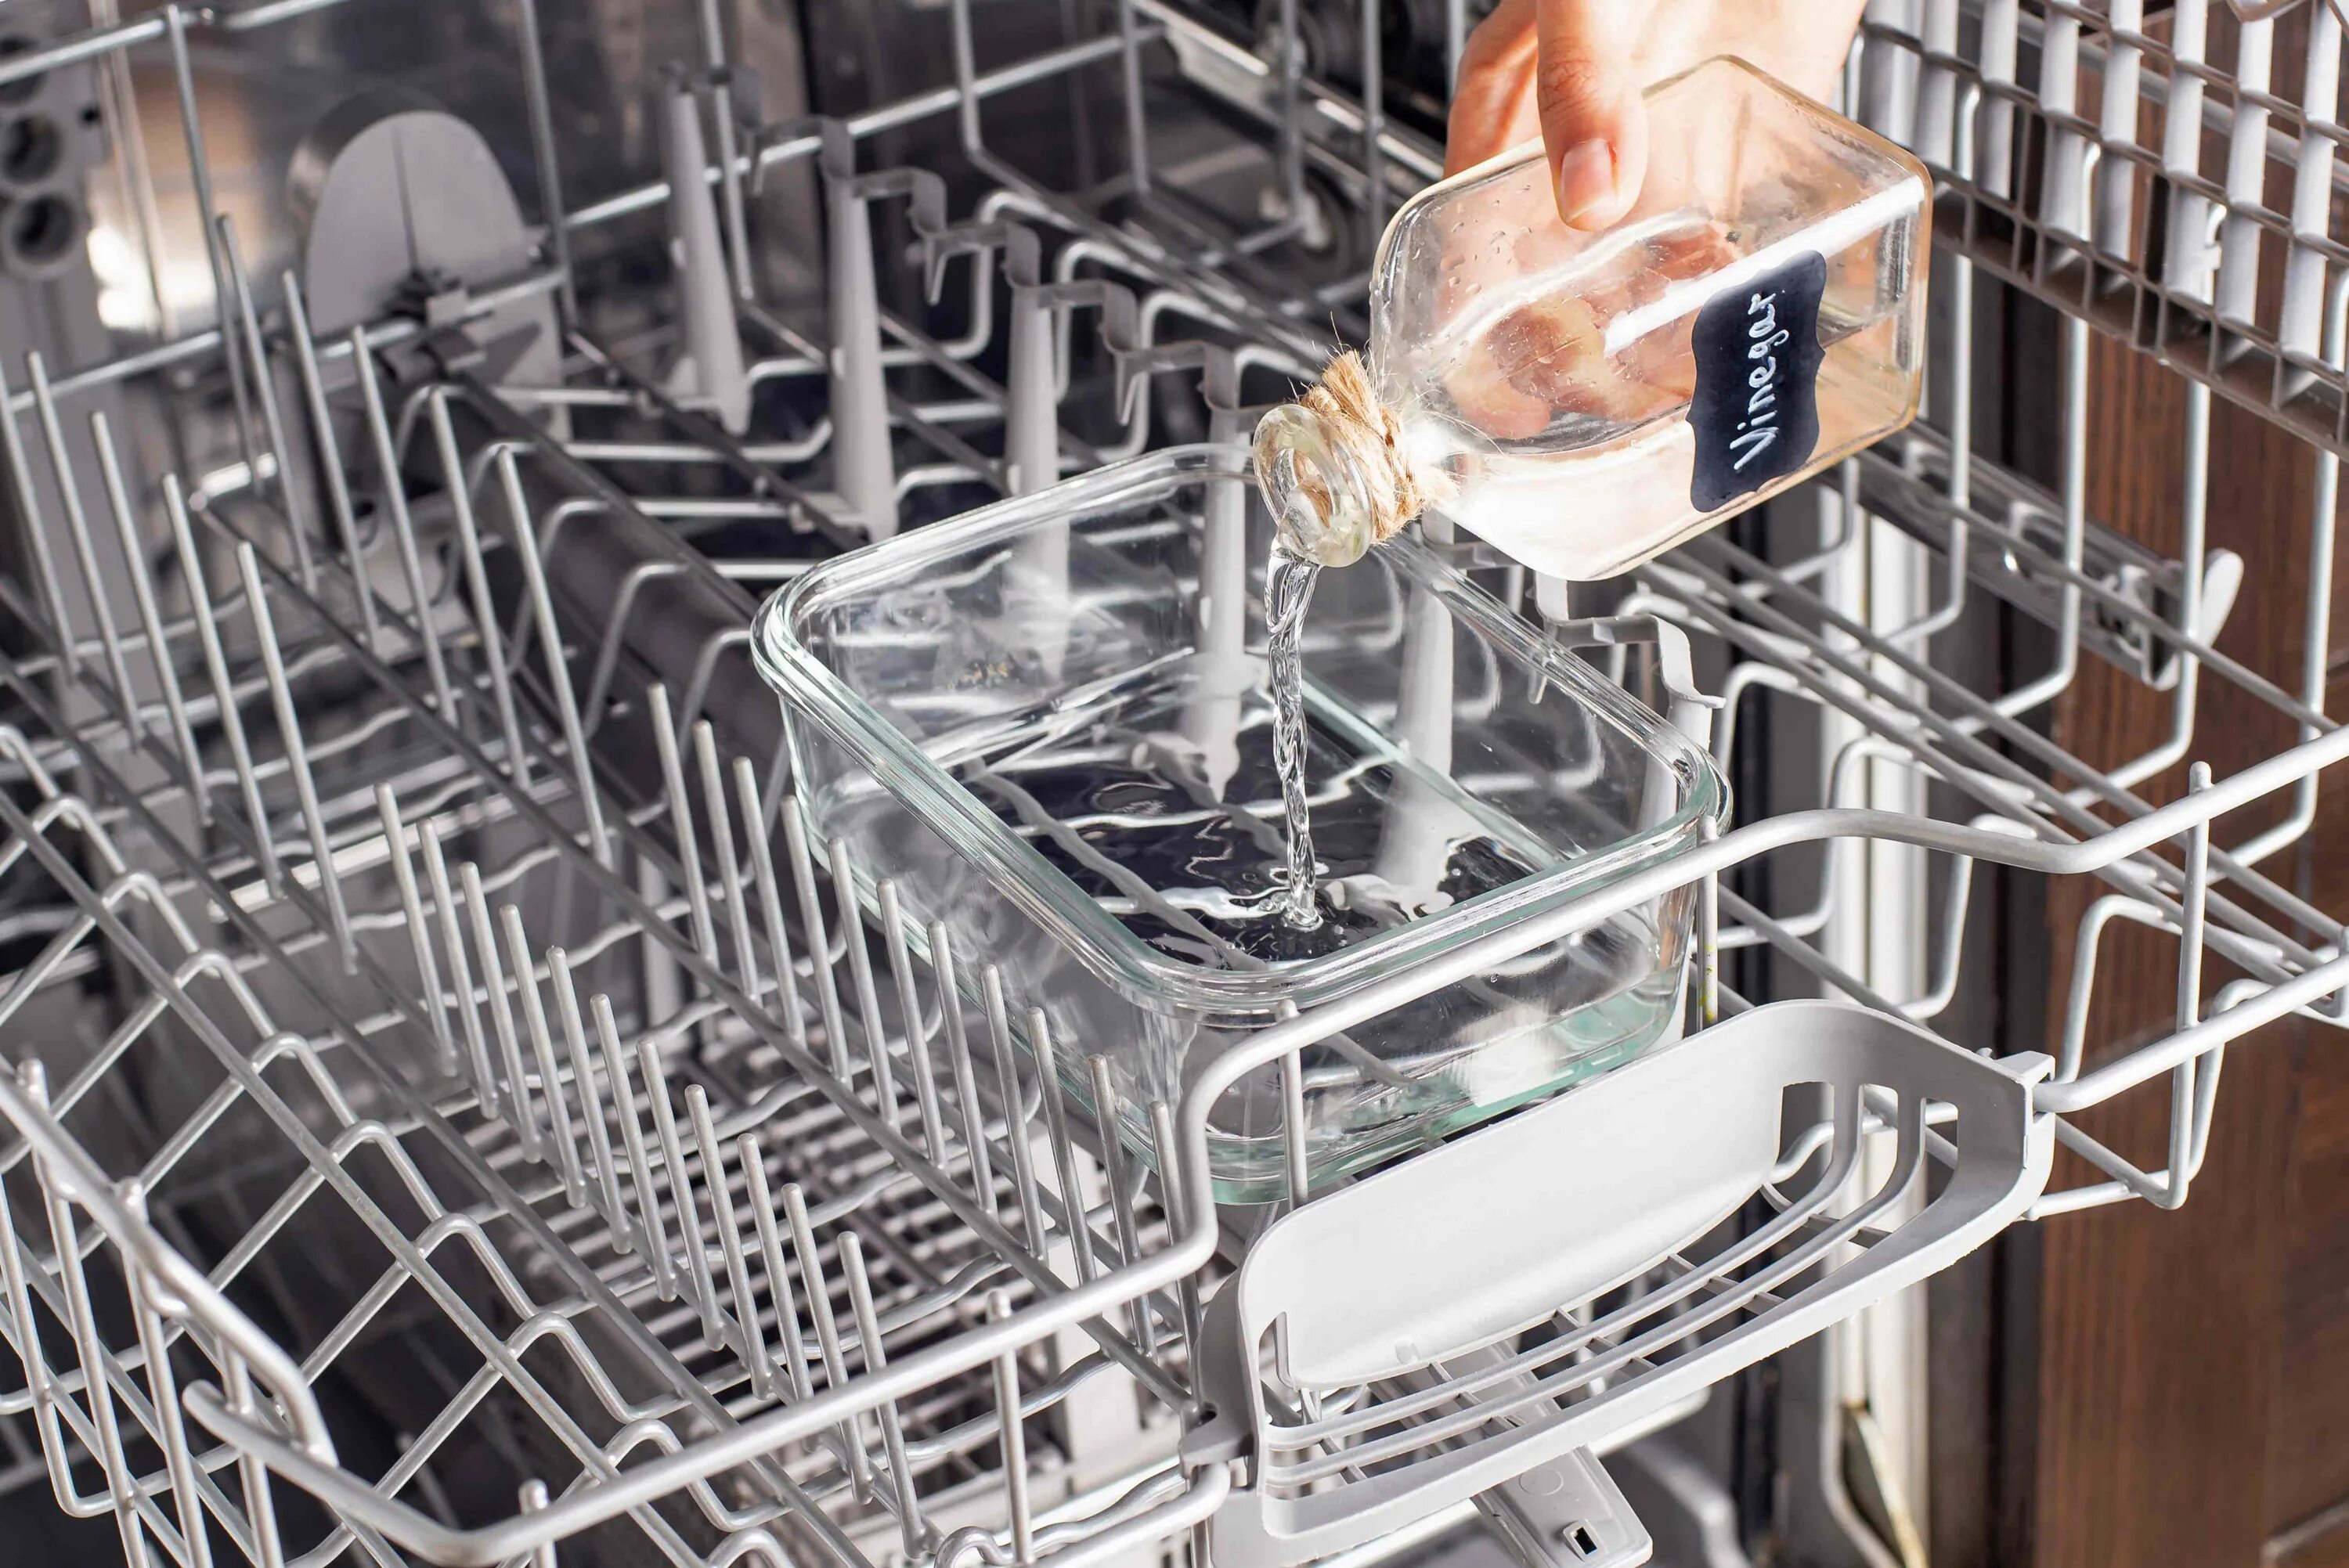 Сковородка можно мыть в посудомойке. Фильтр для посудомоечной машины. Чистка посудомоечной машины. Помыть посудомоечную машину. Посуда в посудомойке.